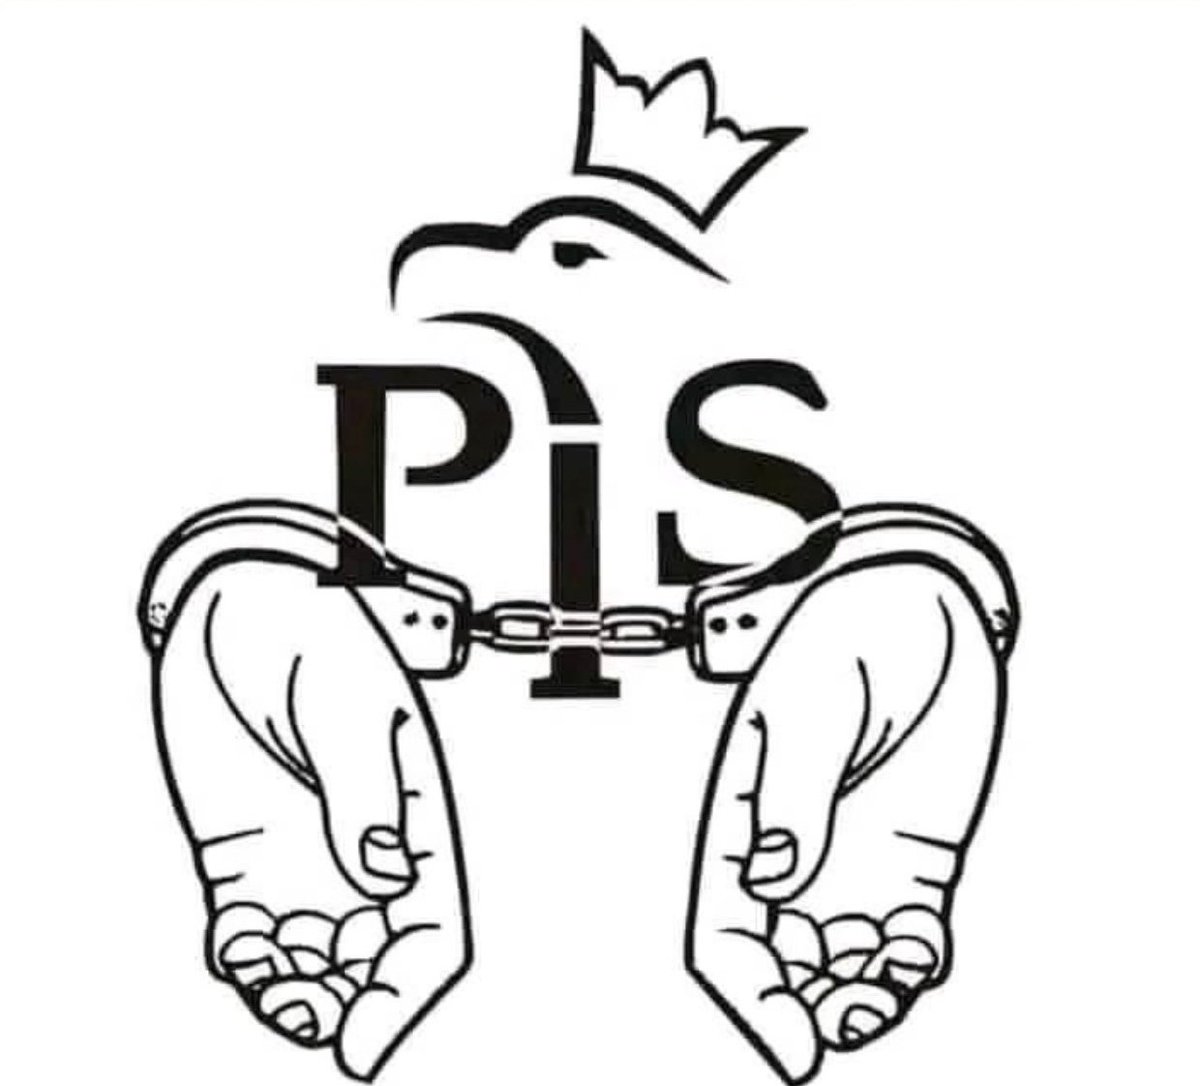 Mamy #Dość PiS-u, złodziejstwa, kłamstwa i dążenia do wyjścia z UE.
Miejscem pisowskiej mafii,
to nie Parlament, a więzienie.
Powtórzę ; #Dość